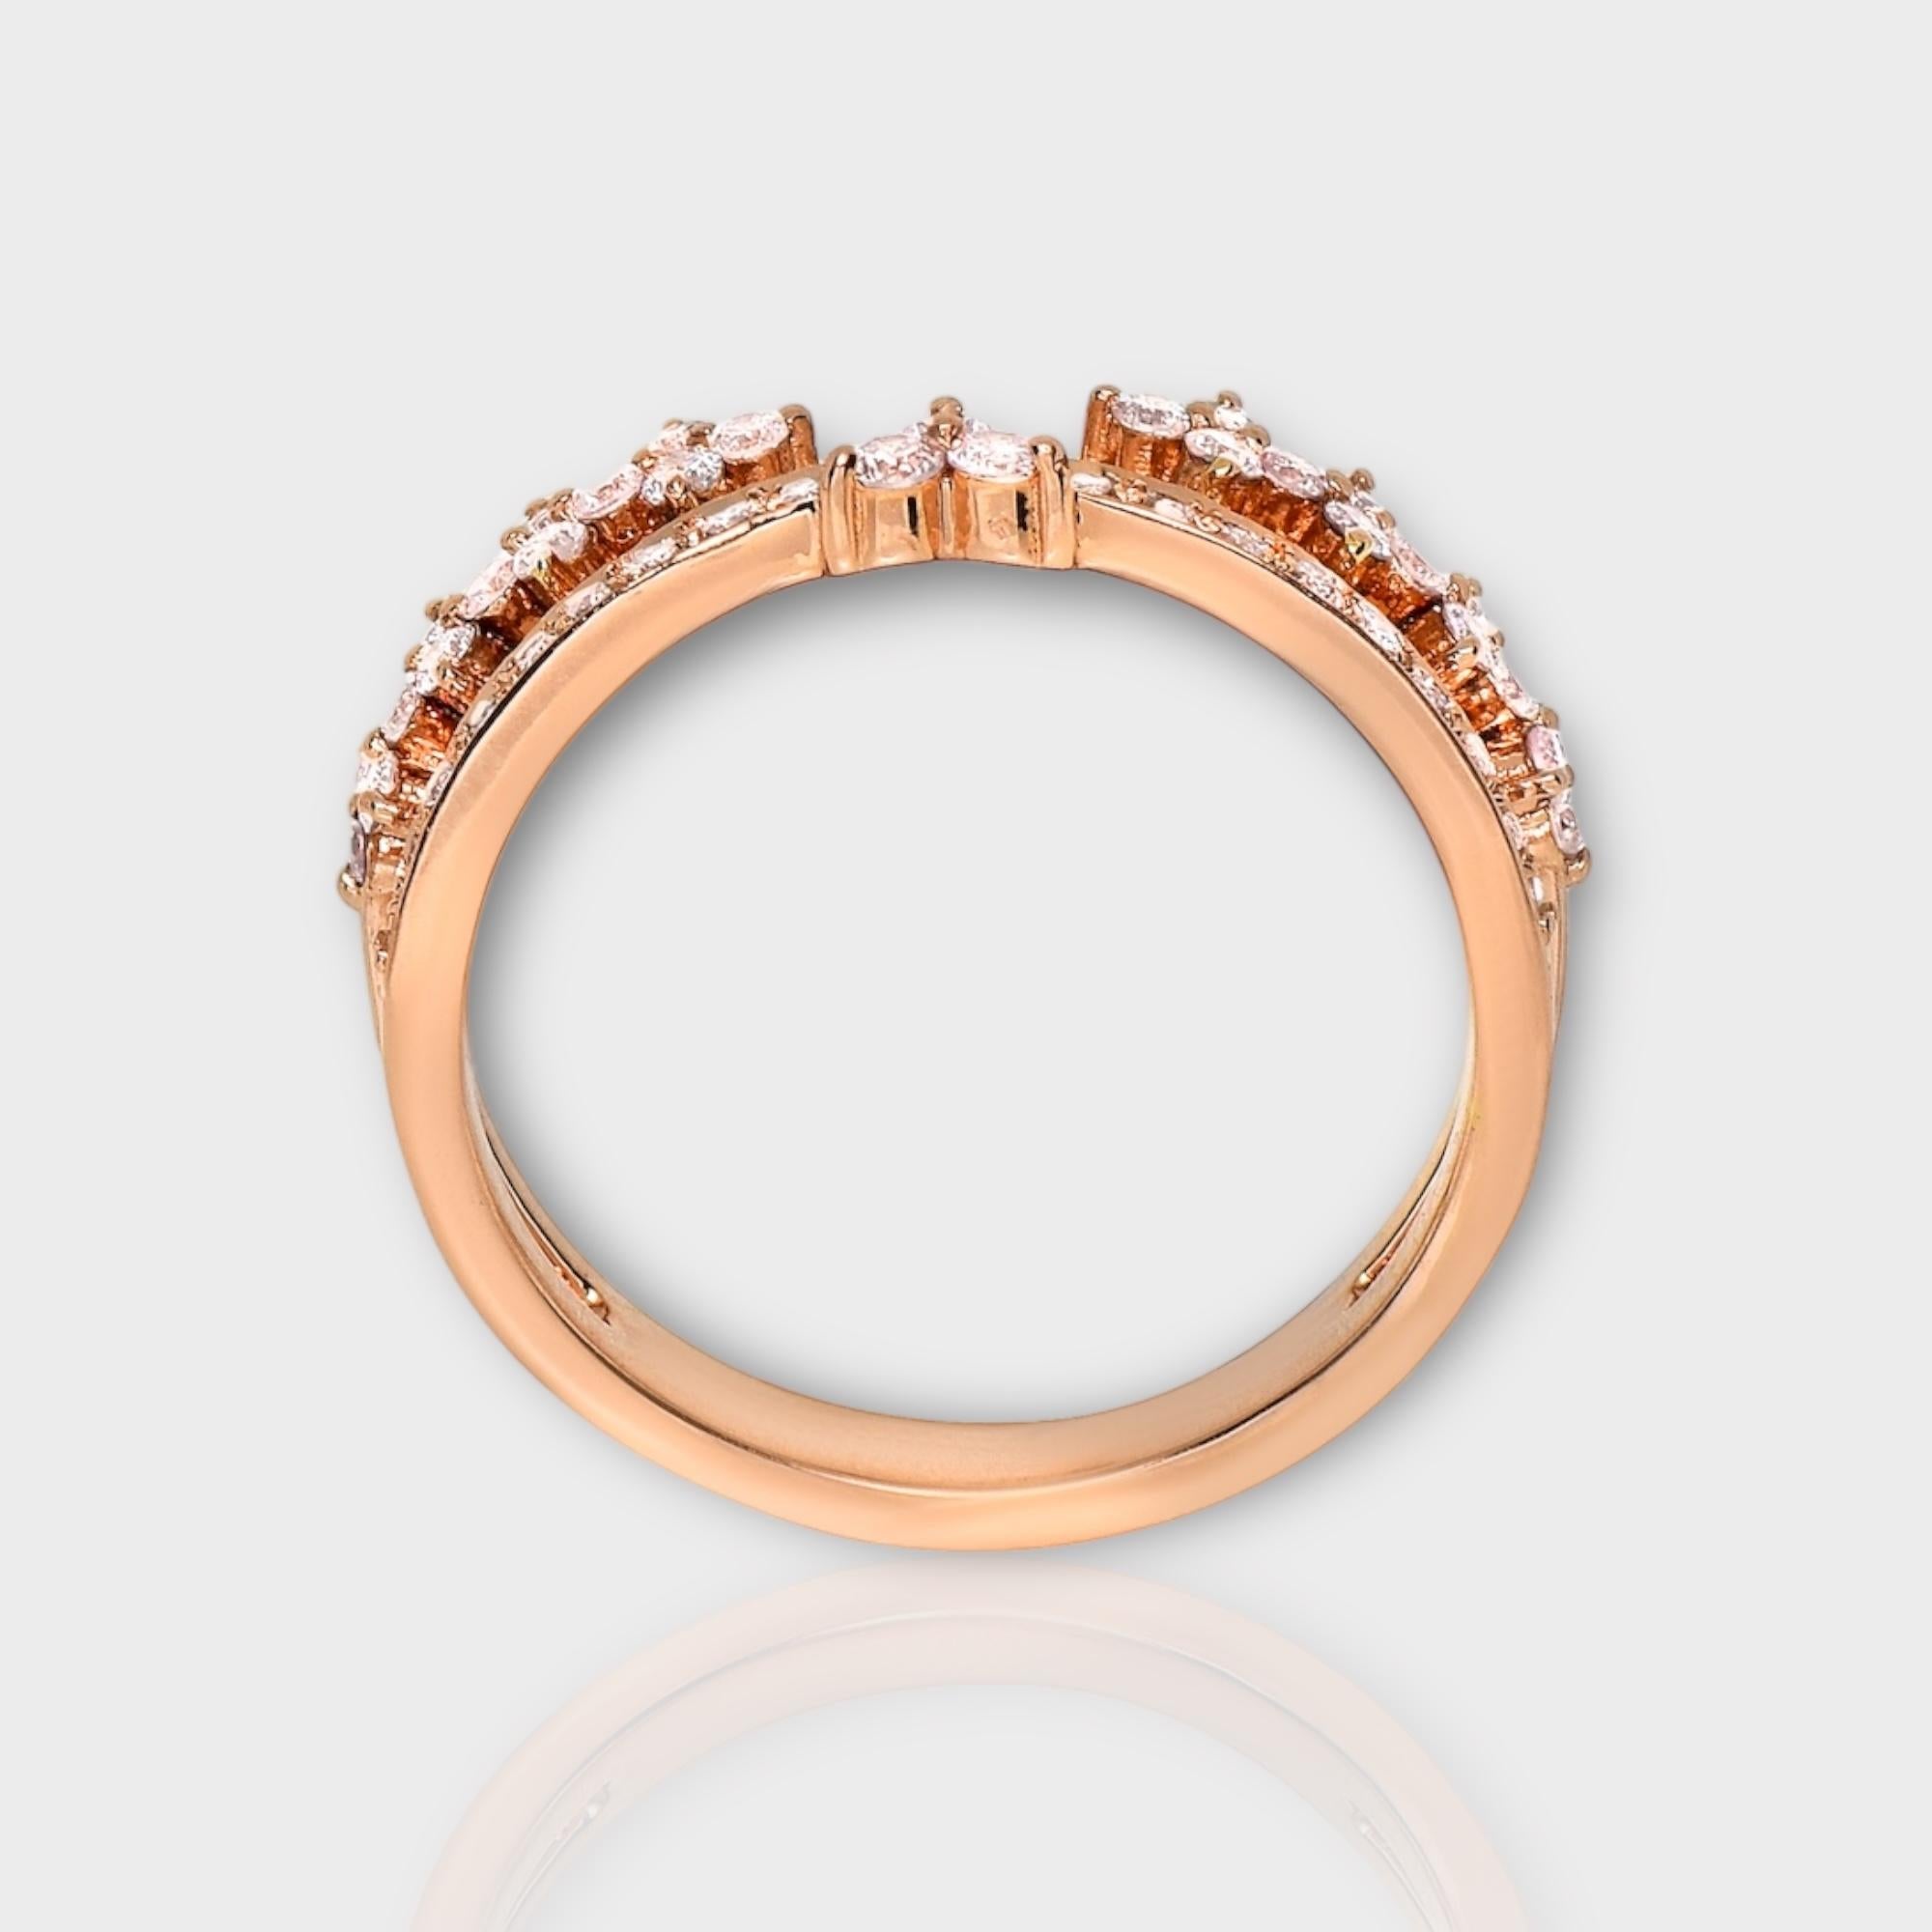 IGI 14K 0.51 ct Natural Pink Diamonds Vintage Crown Design Engagement Ring For Sale 1